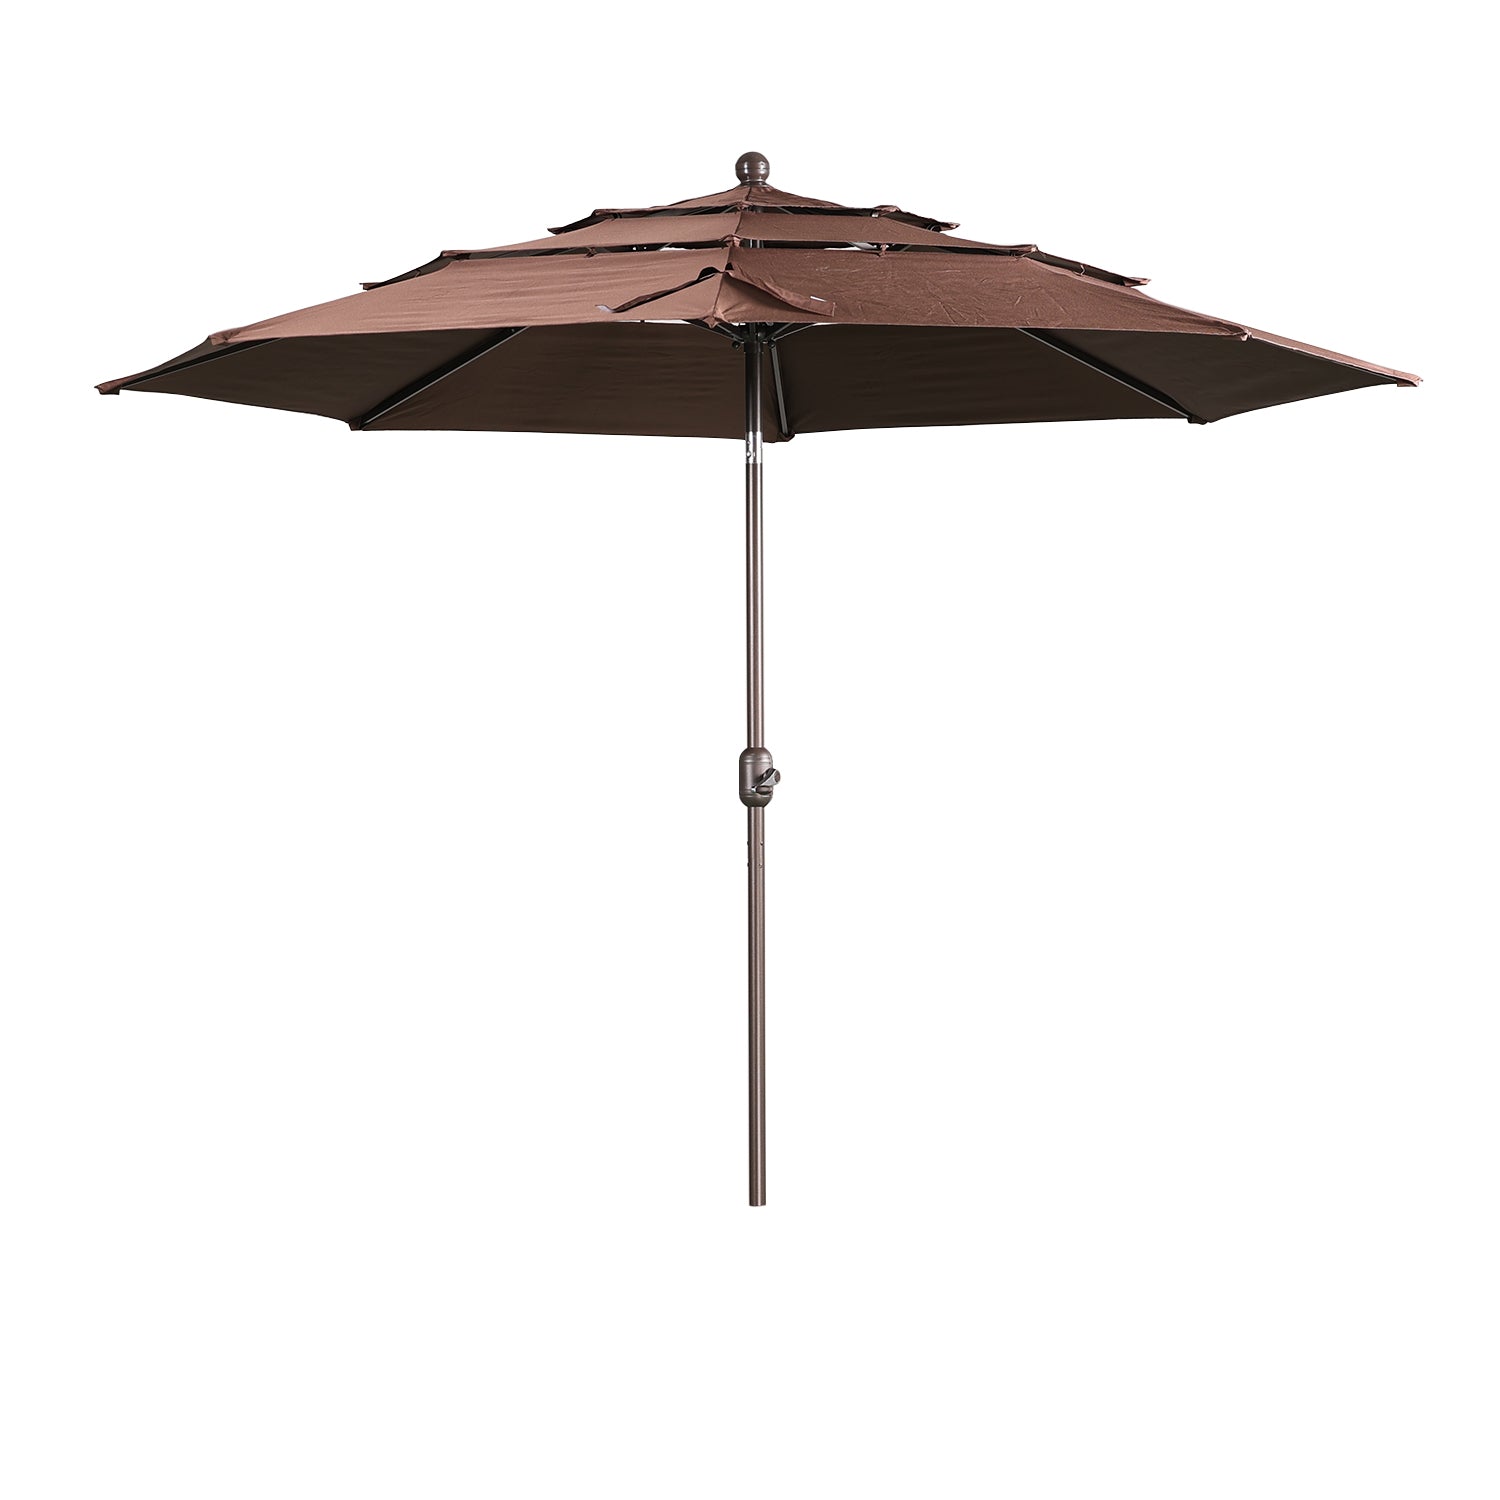 3 Tier 10ft. Patio Umbrella - Market Umbrella with Crank (No Base) Patio Umbrella Aoodor Coffee  